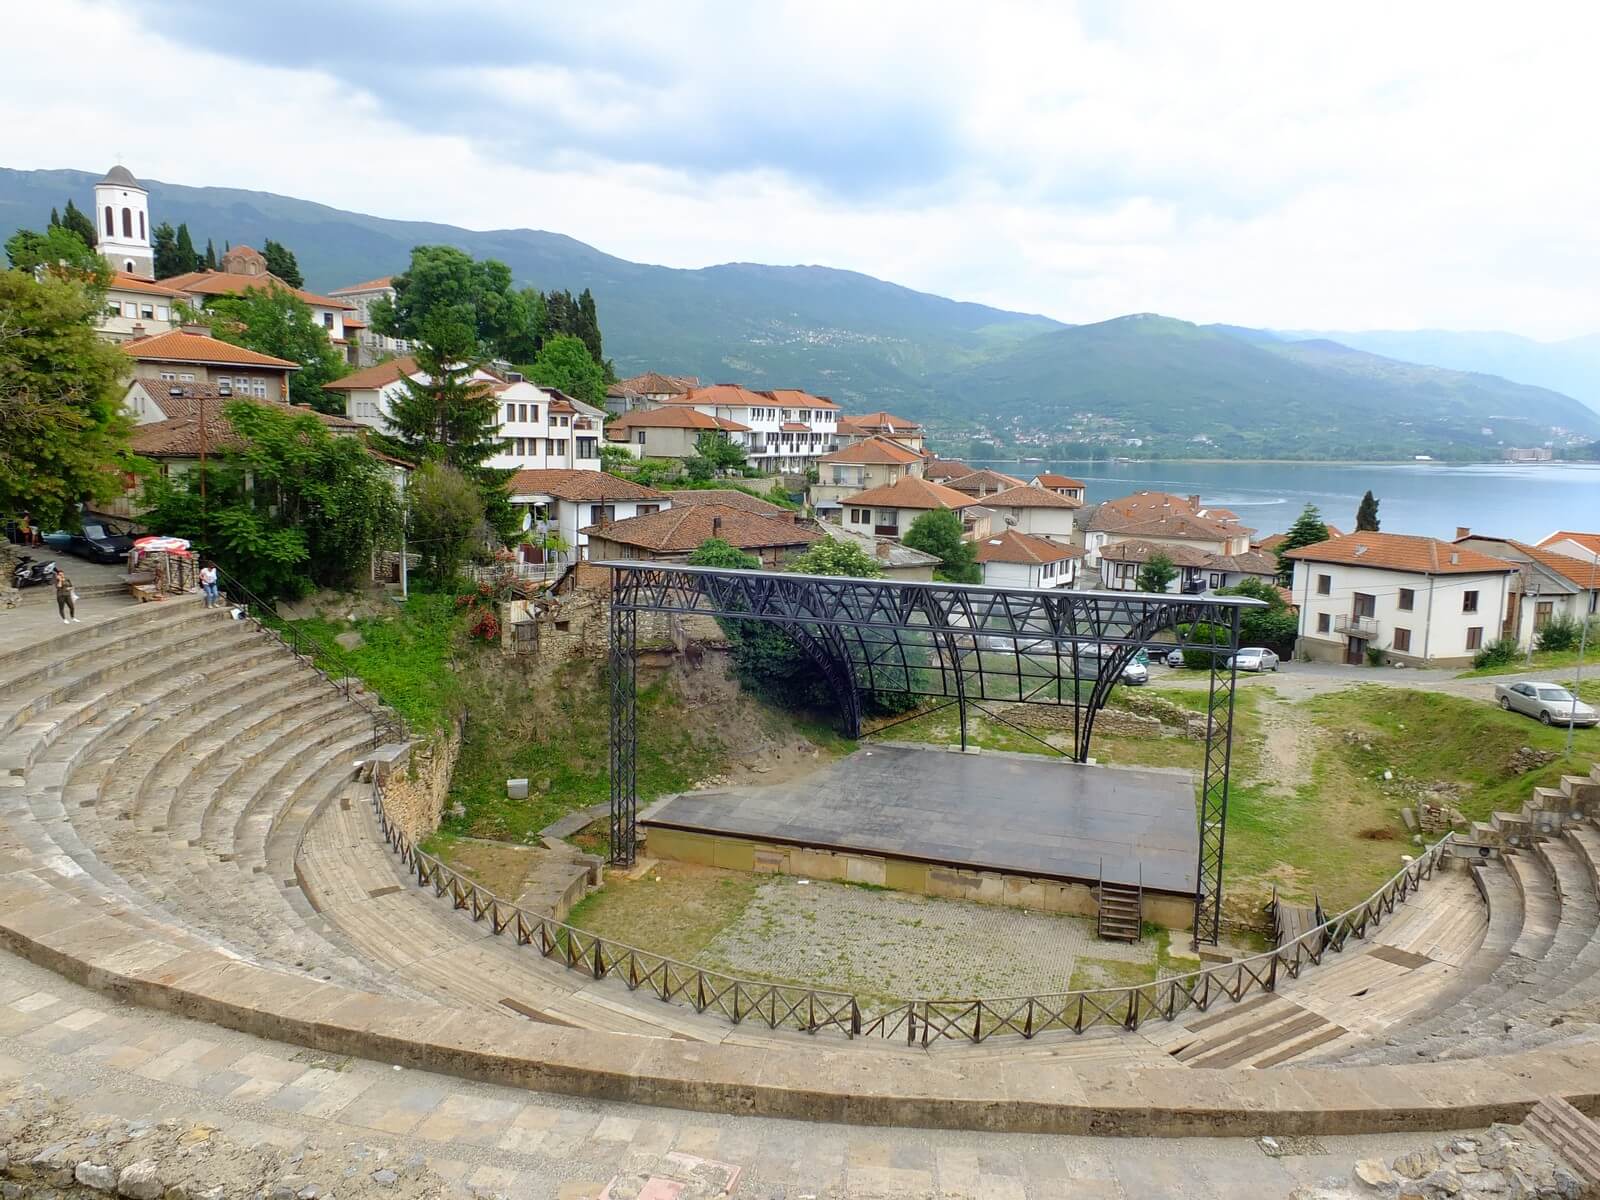 Foto: Das antike Theater von Ohrid in Nordmazedonien - Lupe Reisen